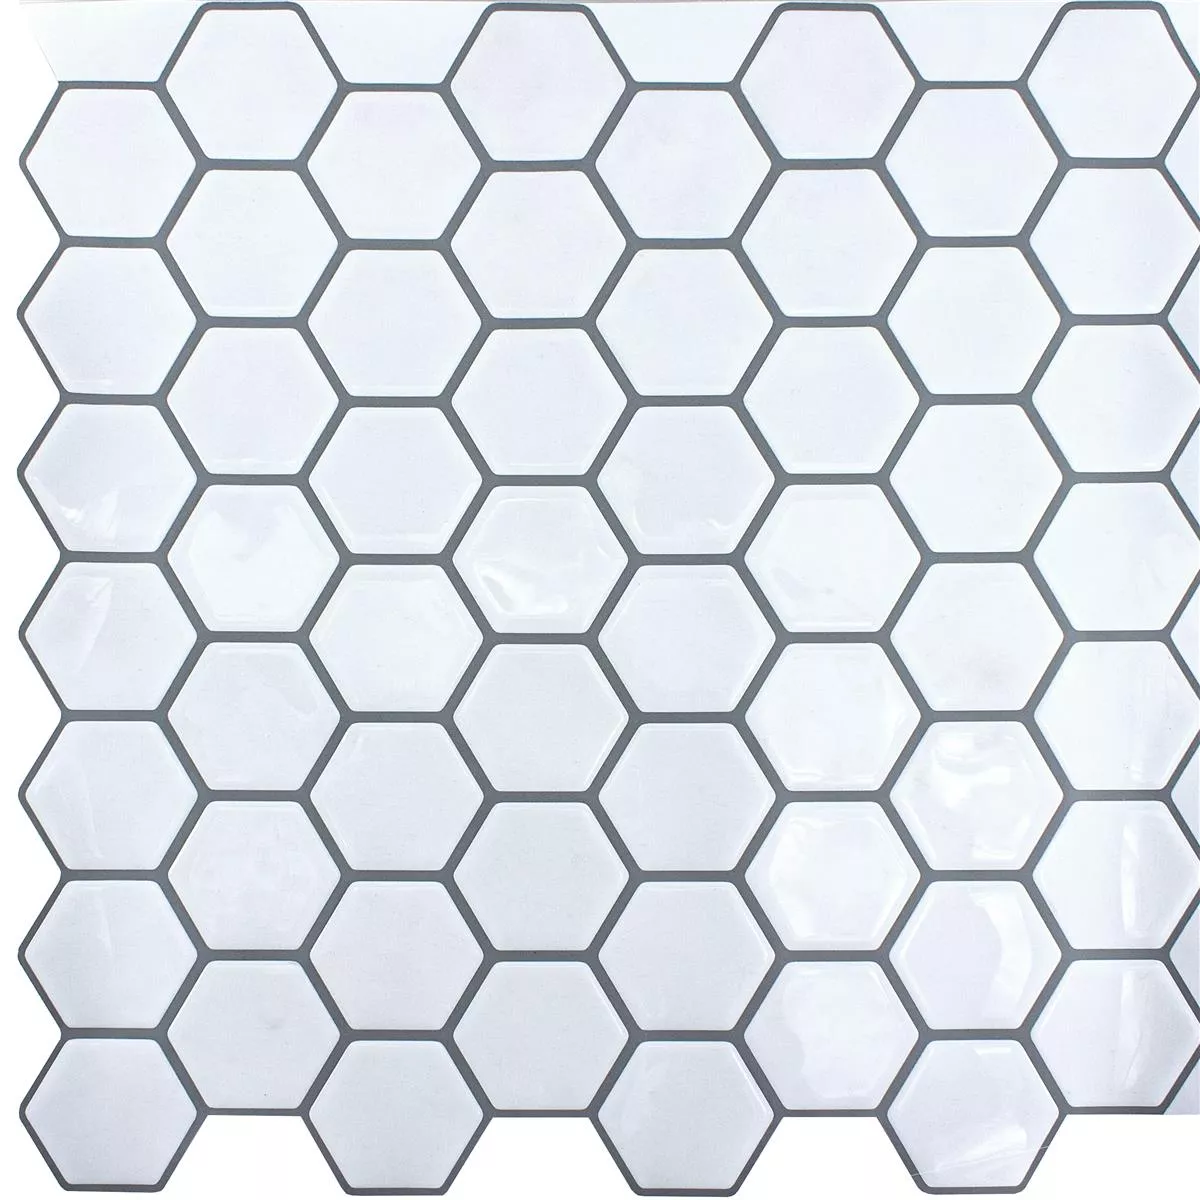 Vinilo Azulejos De Mosaico Edinburg Hexagonales Blanco Autoadhesivo